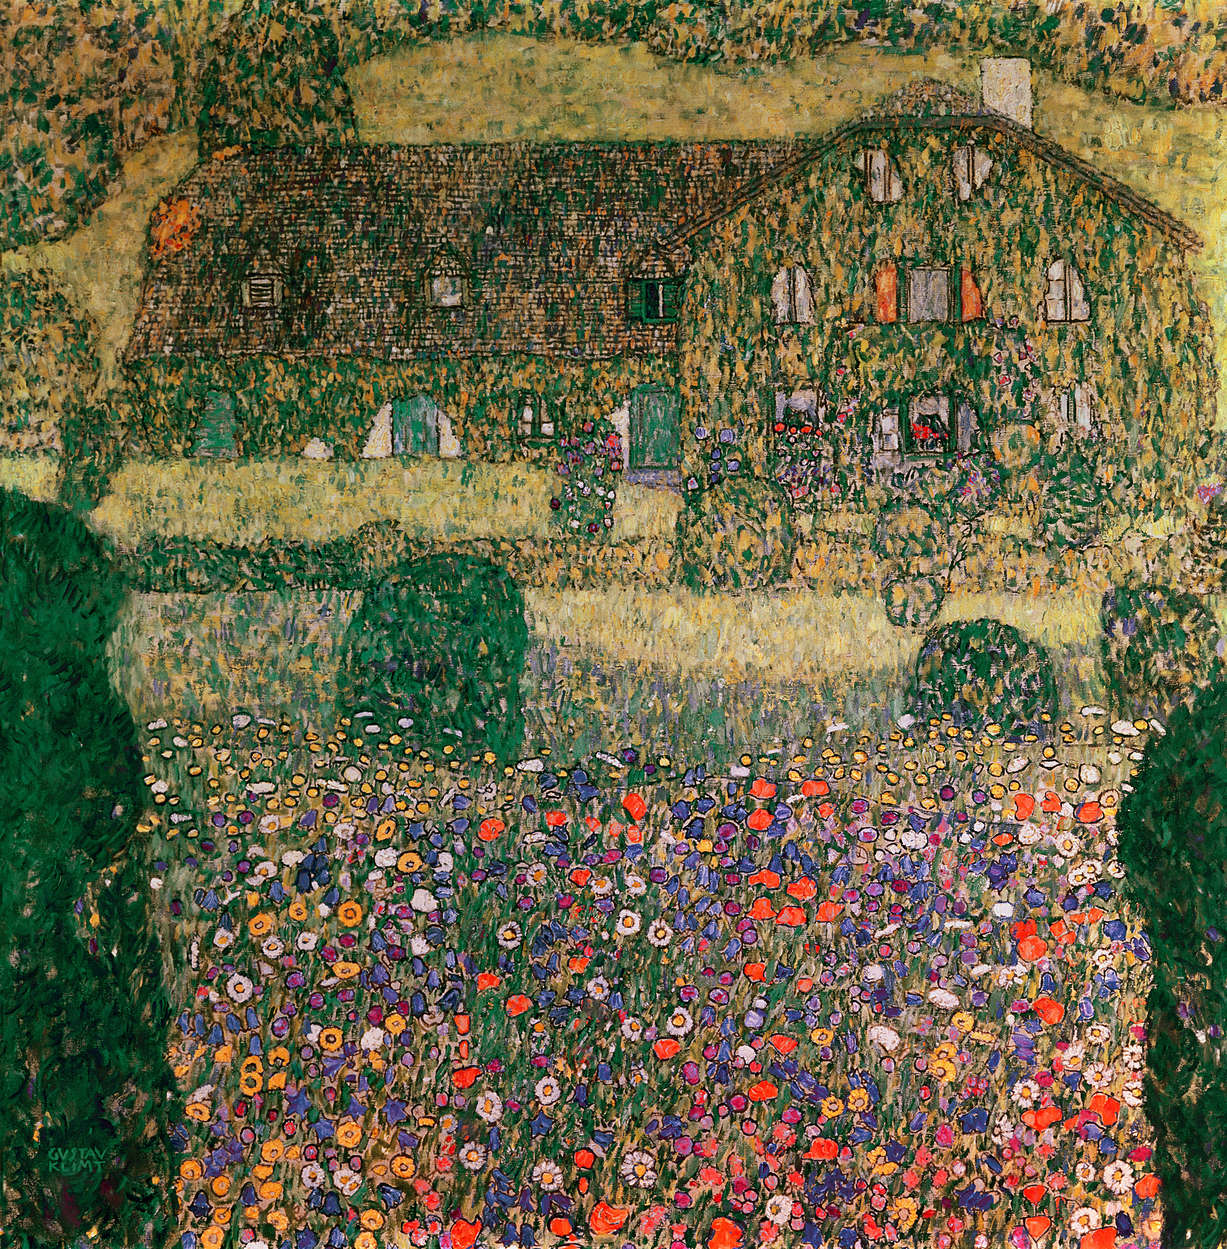             Landhuis aan het Attermeer" muurschildering van Gustav Klimt
        